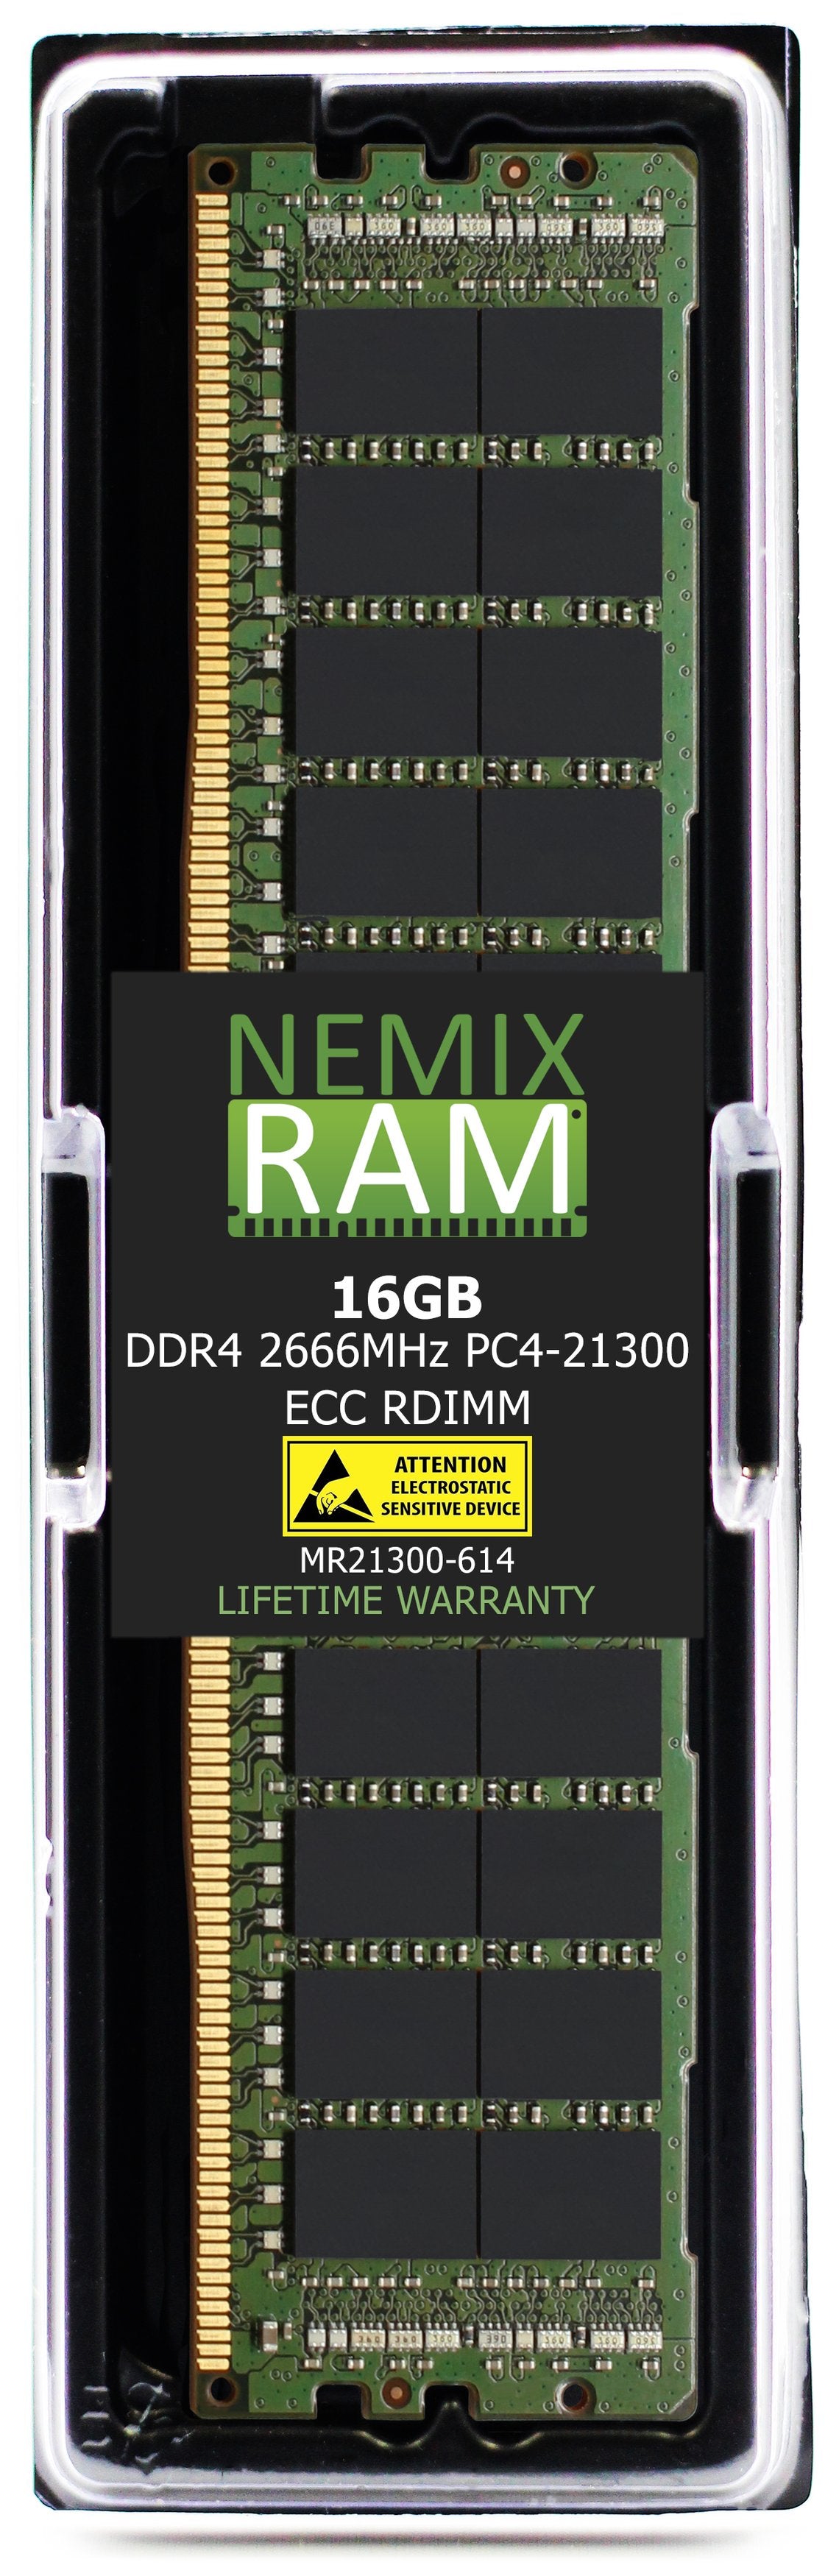 16GB DDR4 2666MHZ PC4-21300 RDIMM Compatible with Supermicro MEM-DR416LA-ER26